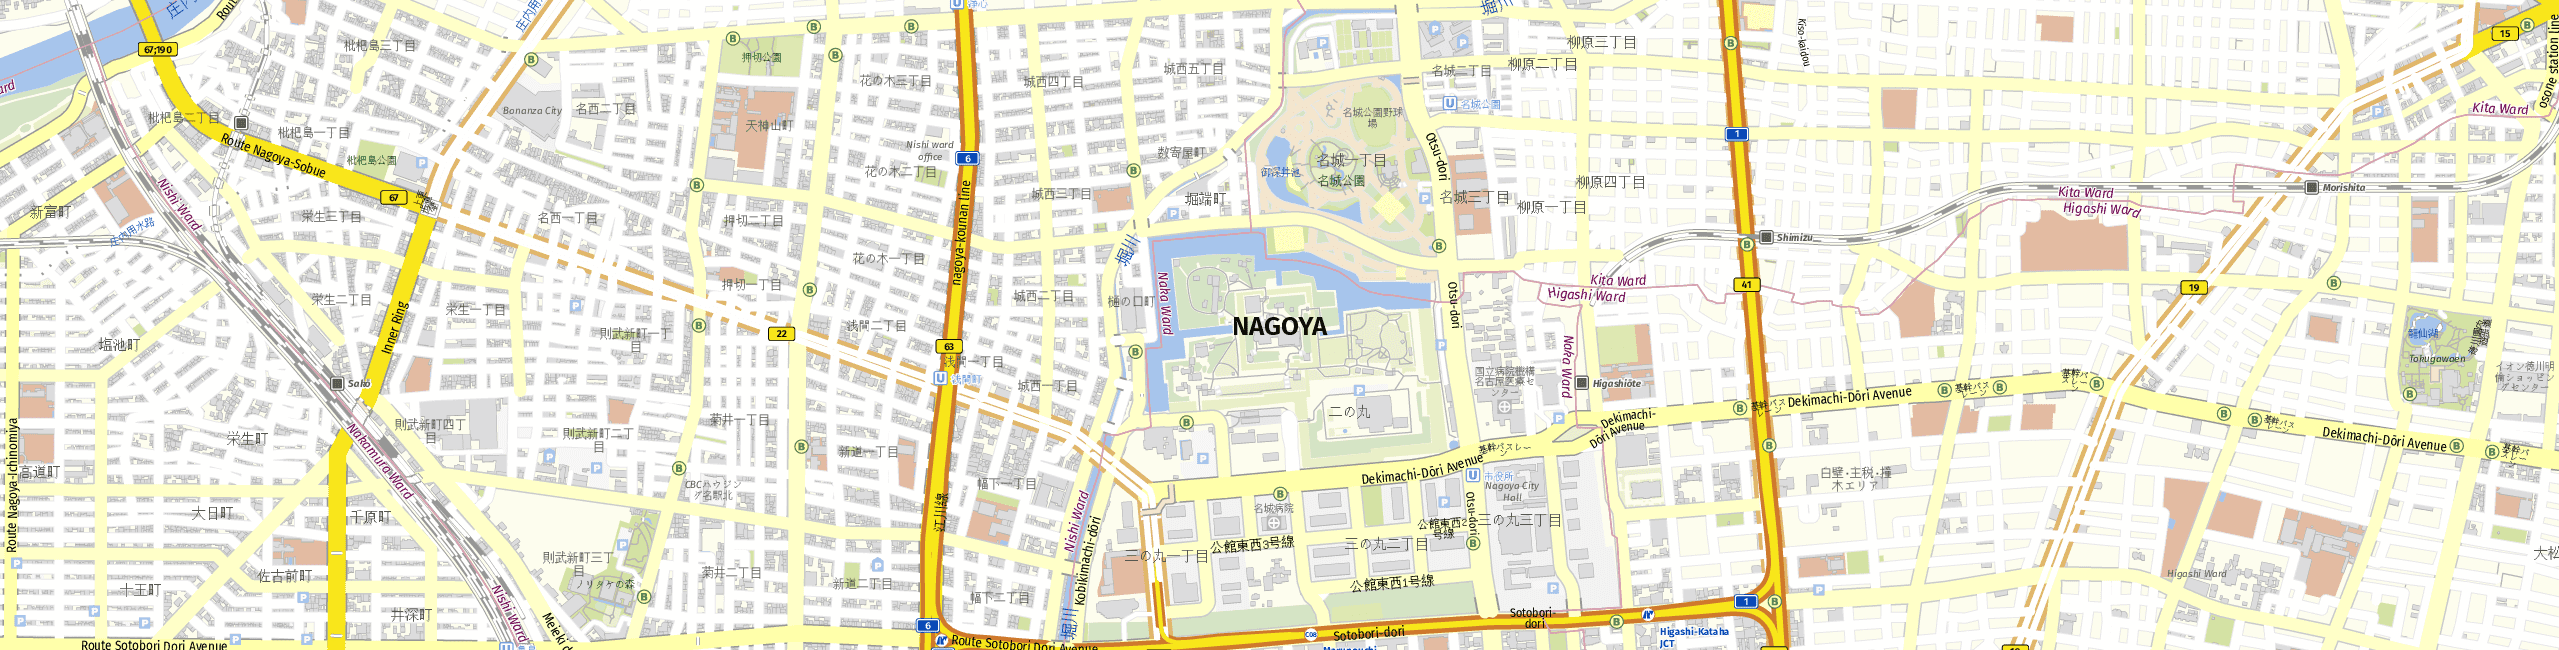 Stadtplan Nagoya zum Downloaden.